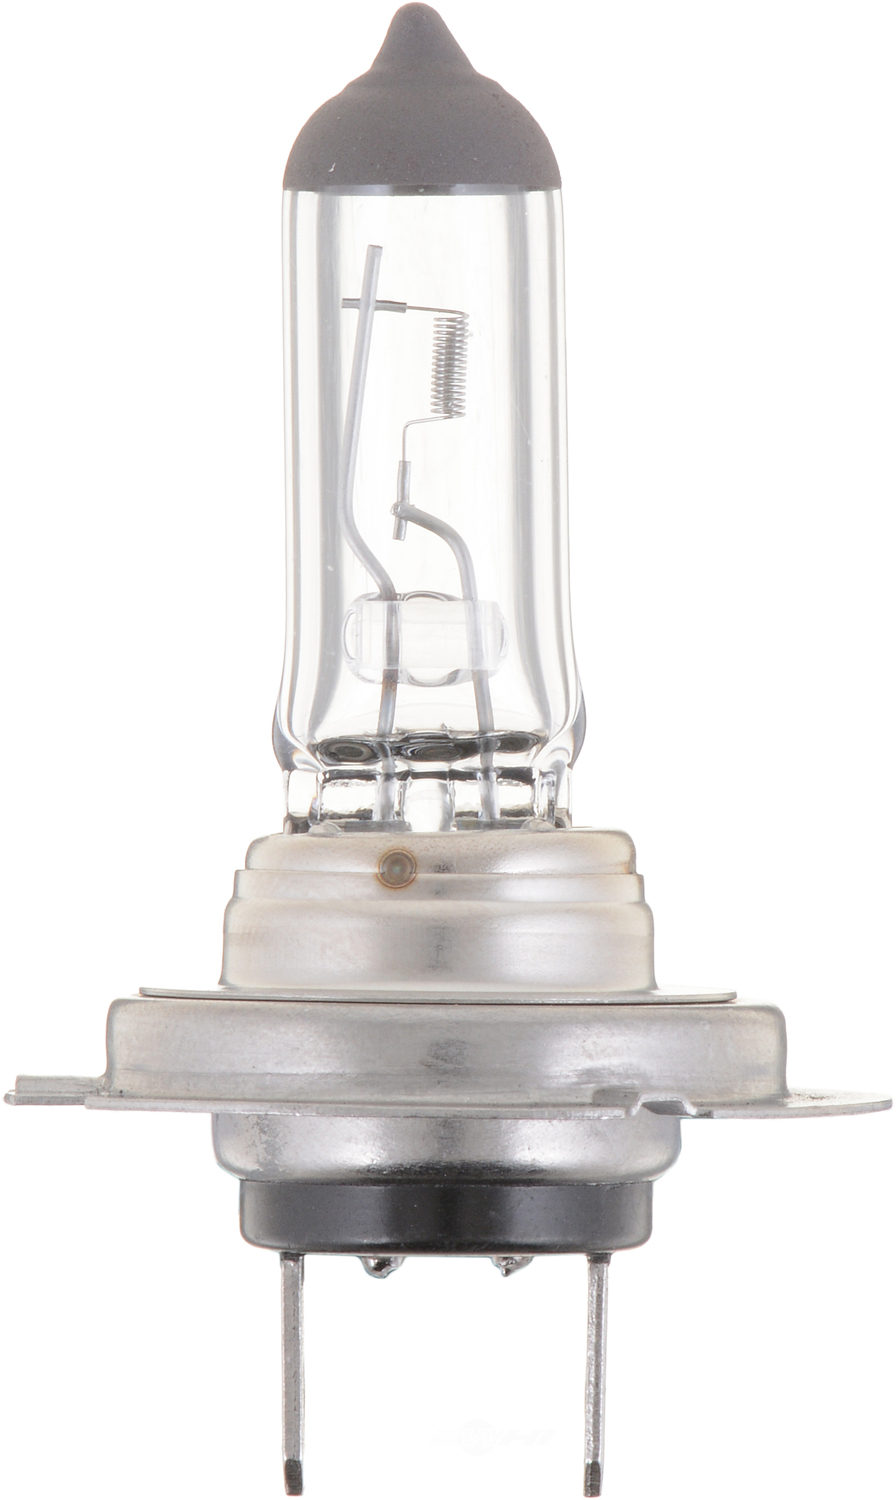 PHILIPS LIGHTING COMPANY - Vision - Single Blister Pack Cornering Light Bulb - PLP H7PRB1